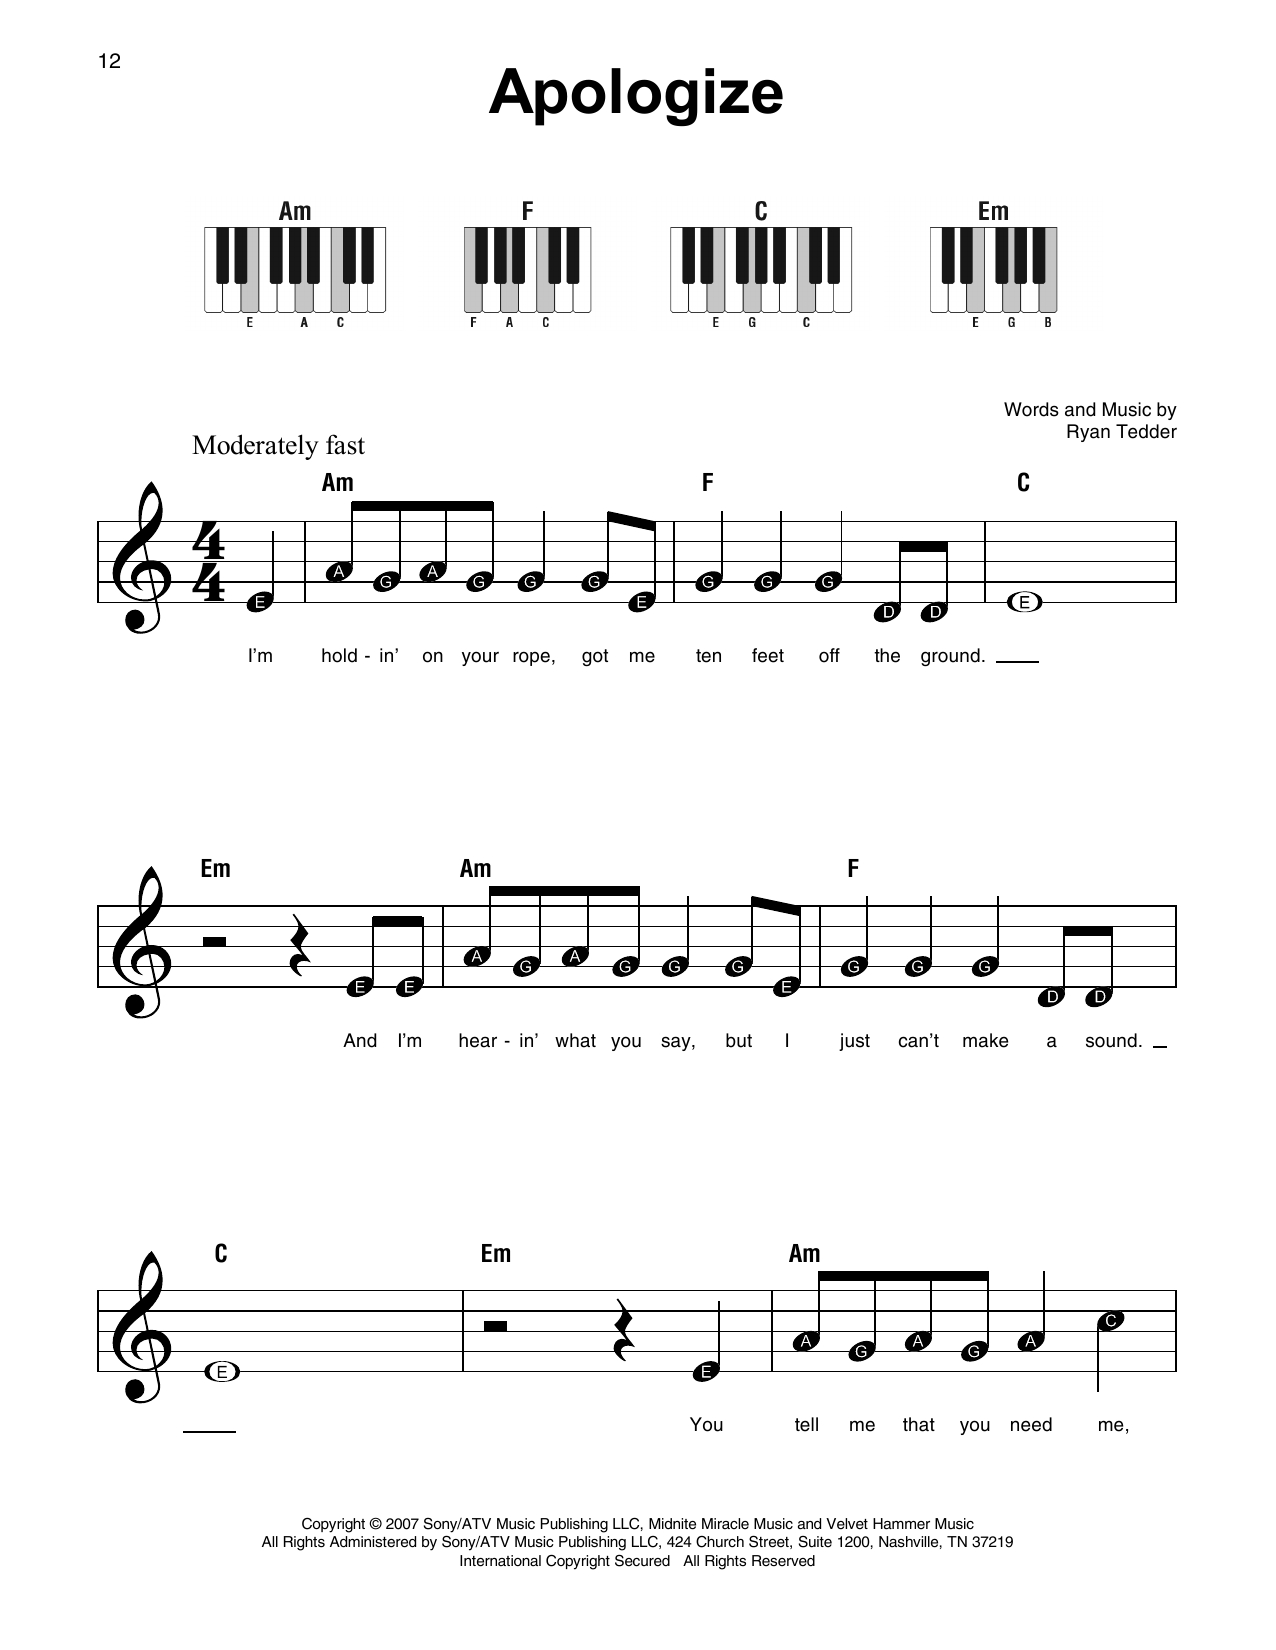 Apologize (Feat. Onerepublic) Sheet Music | Timbaland | Super Easy Piano - Apologize Piano Sheet Music Free Printable